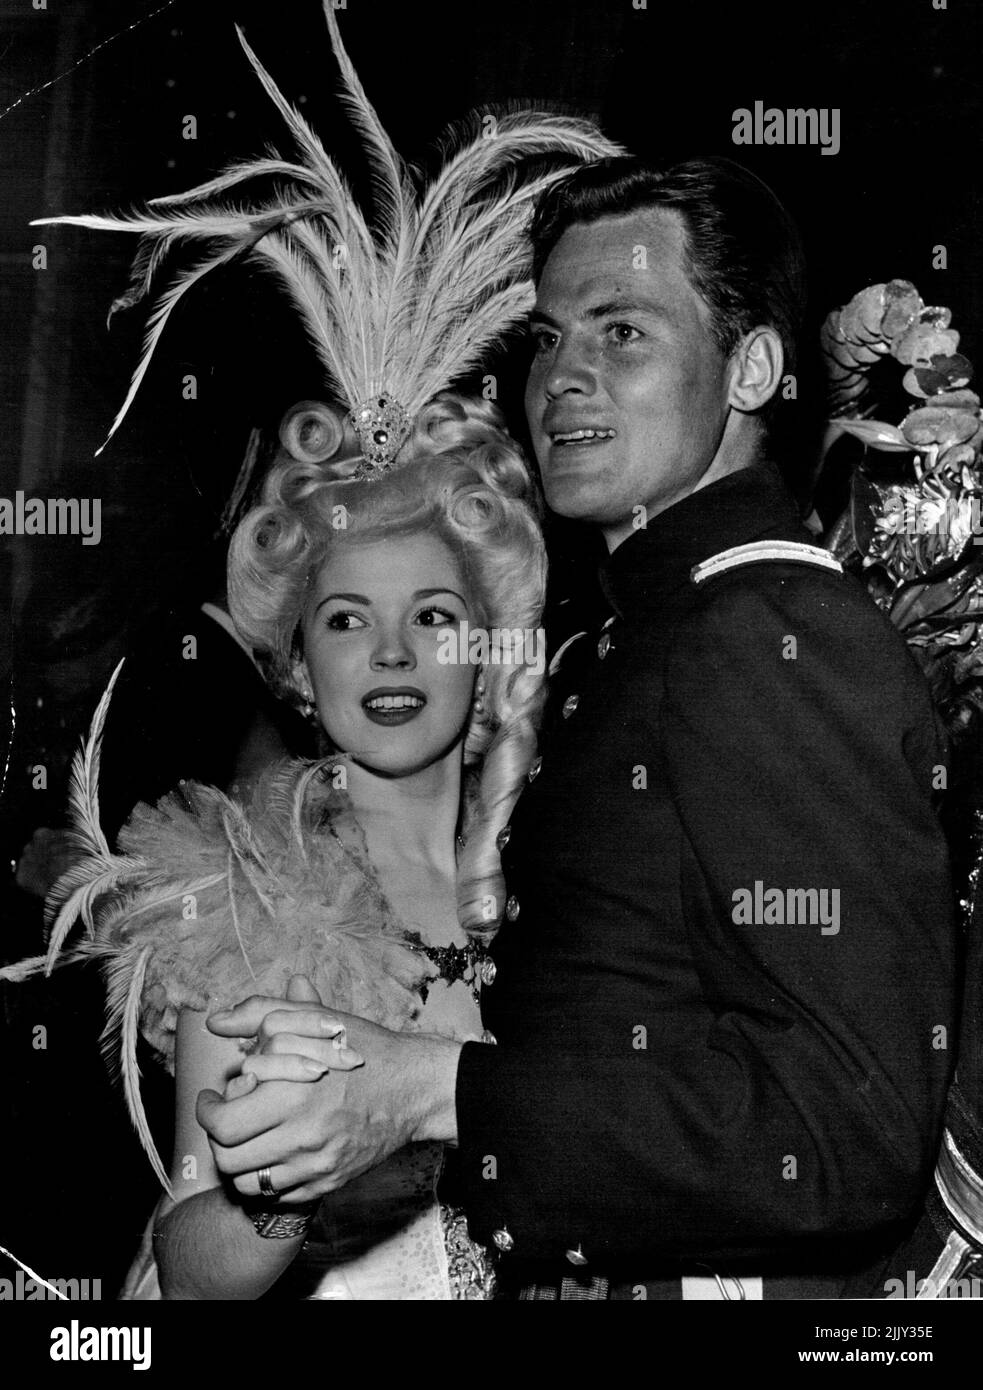 Shirley Temple tanzt in Federn, während Ehemann John Agar in der Uniform erscheint, die er in RKO's kommendem Fort Apache auf einer kürzlich stattfindenden Party in schicken Kleidern trägt. 19. Dezember 1948. Stockfoto